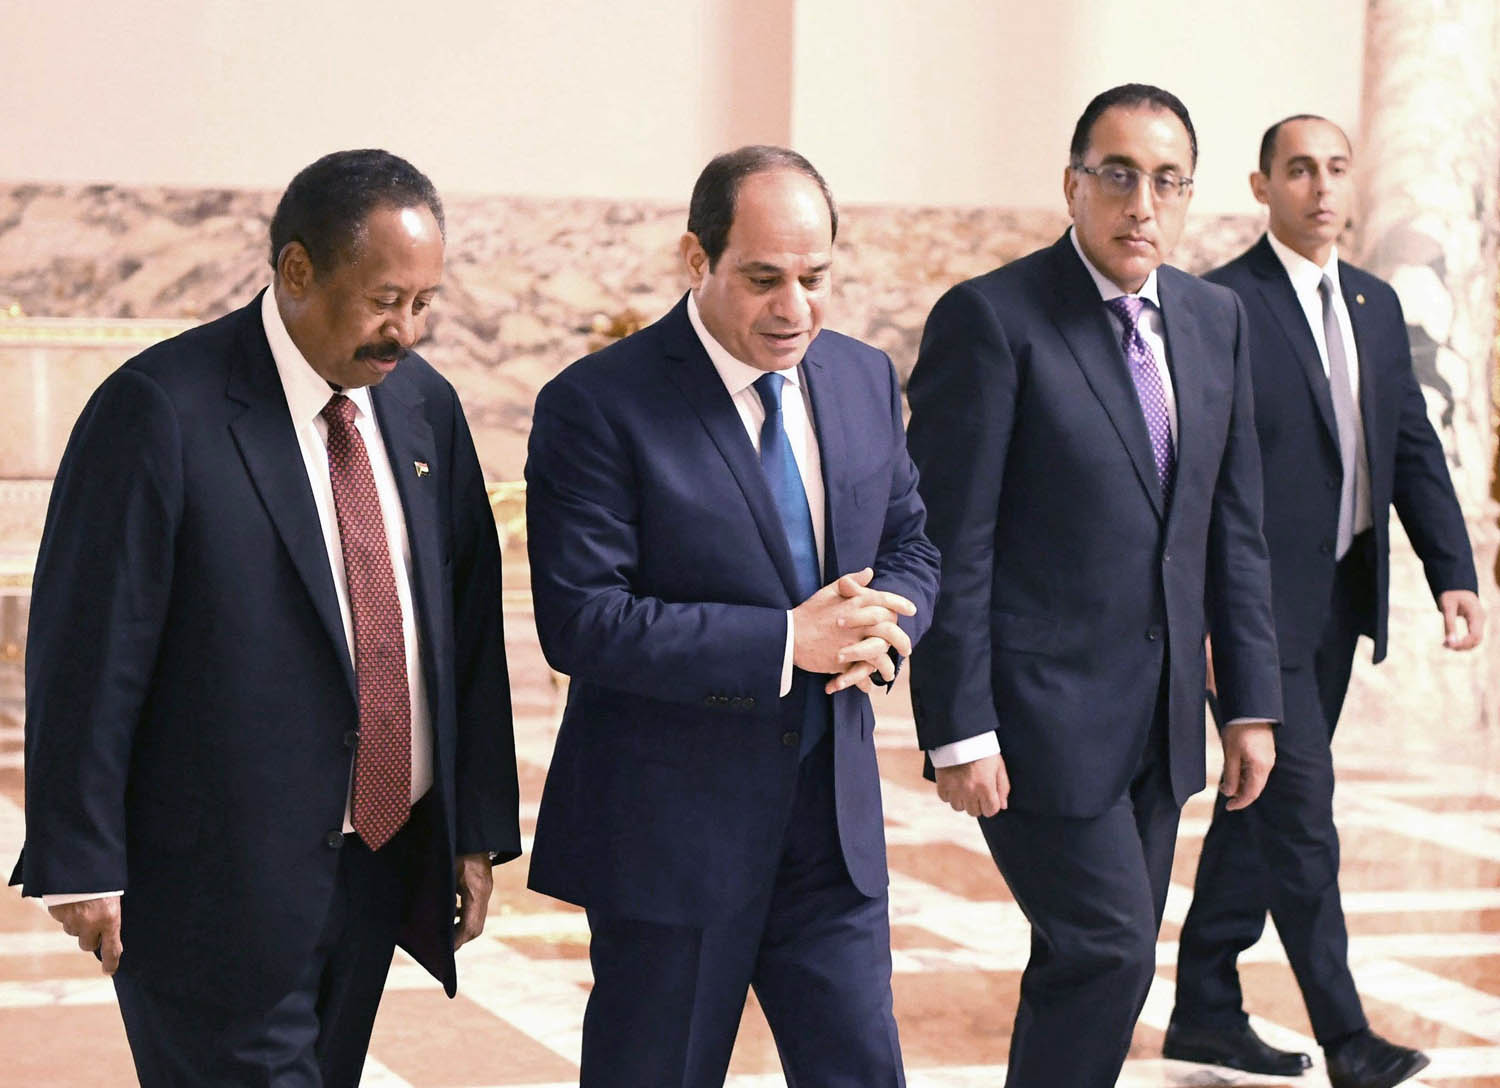 الرئيس المصري عبدالفتاح السيسي يستقبل رئيس الحكومة السودانية الجديد عبدالله حمدوك